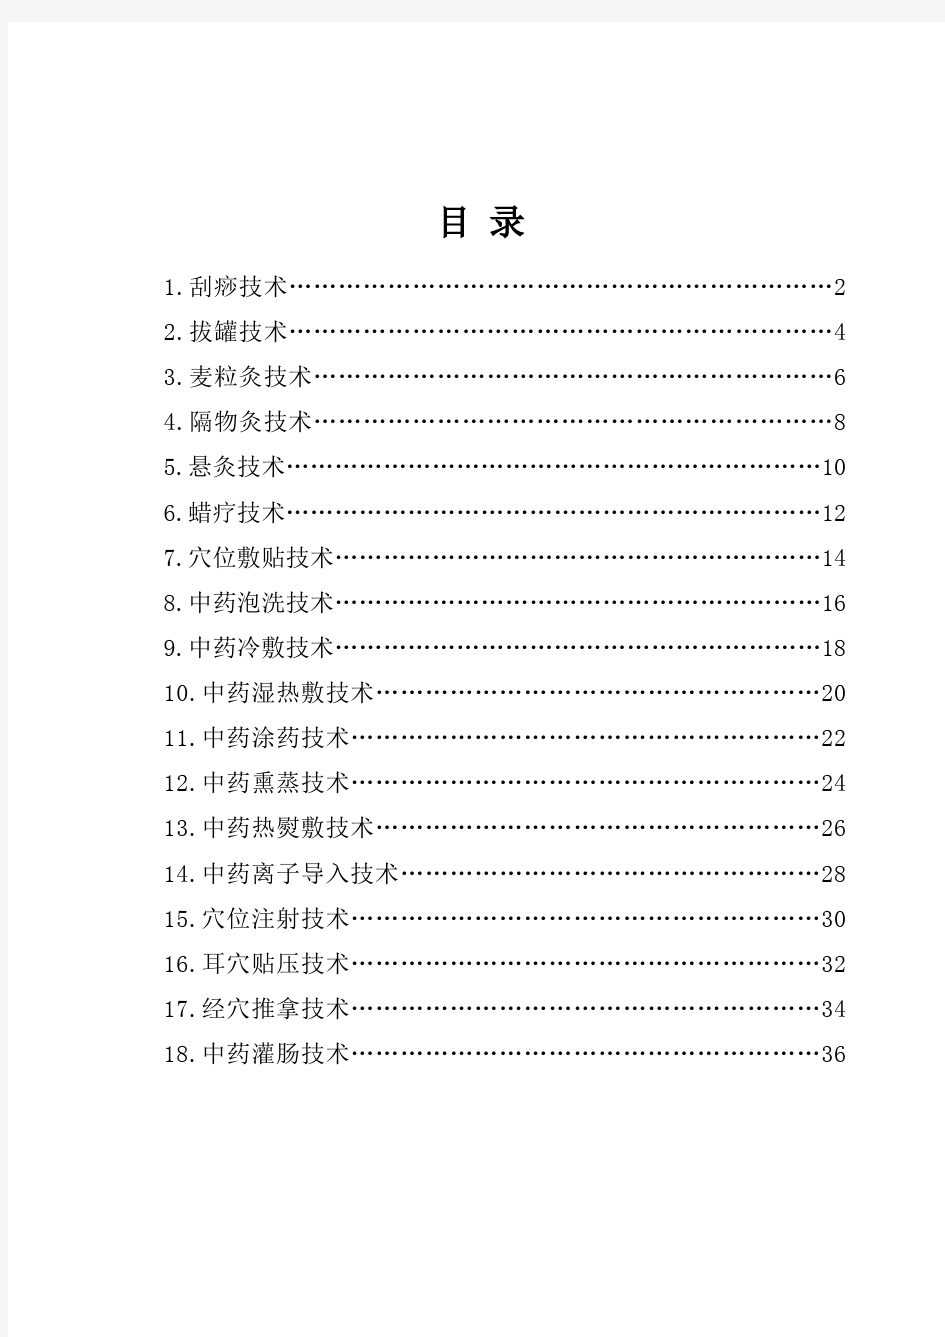 中医护理技术18项操作流程及评分标准